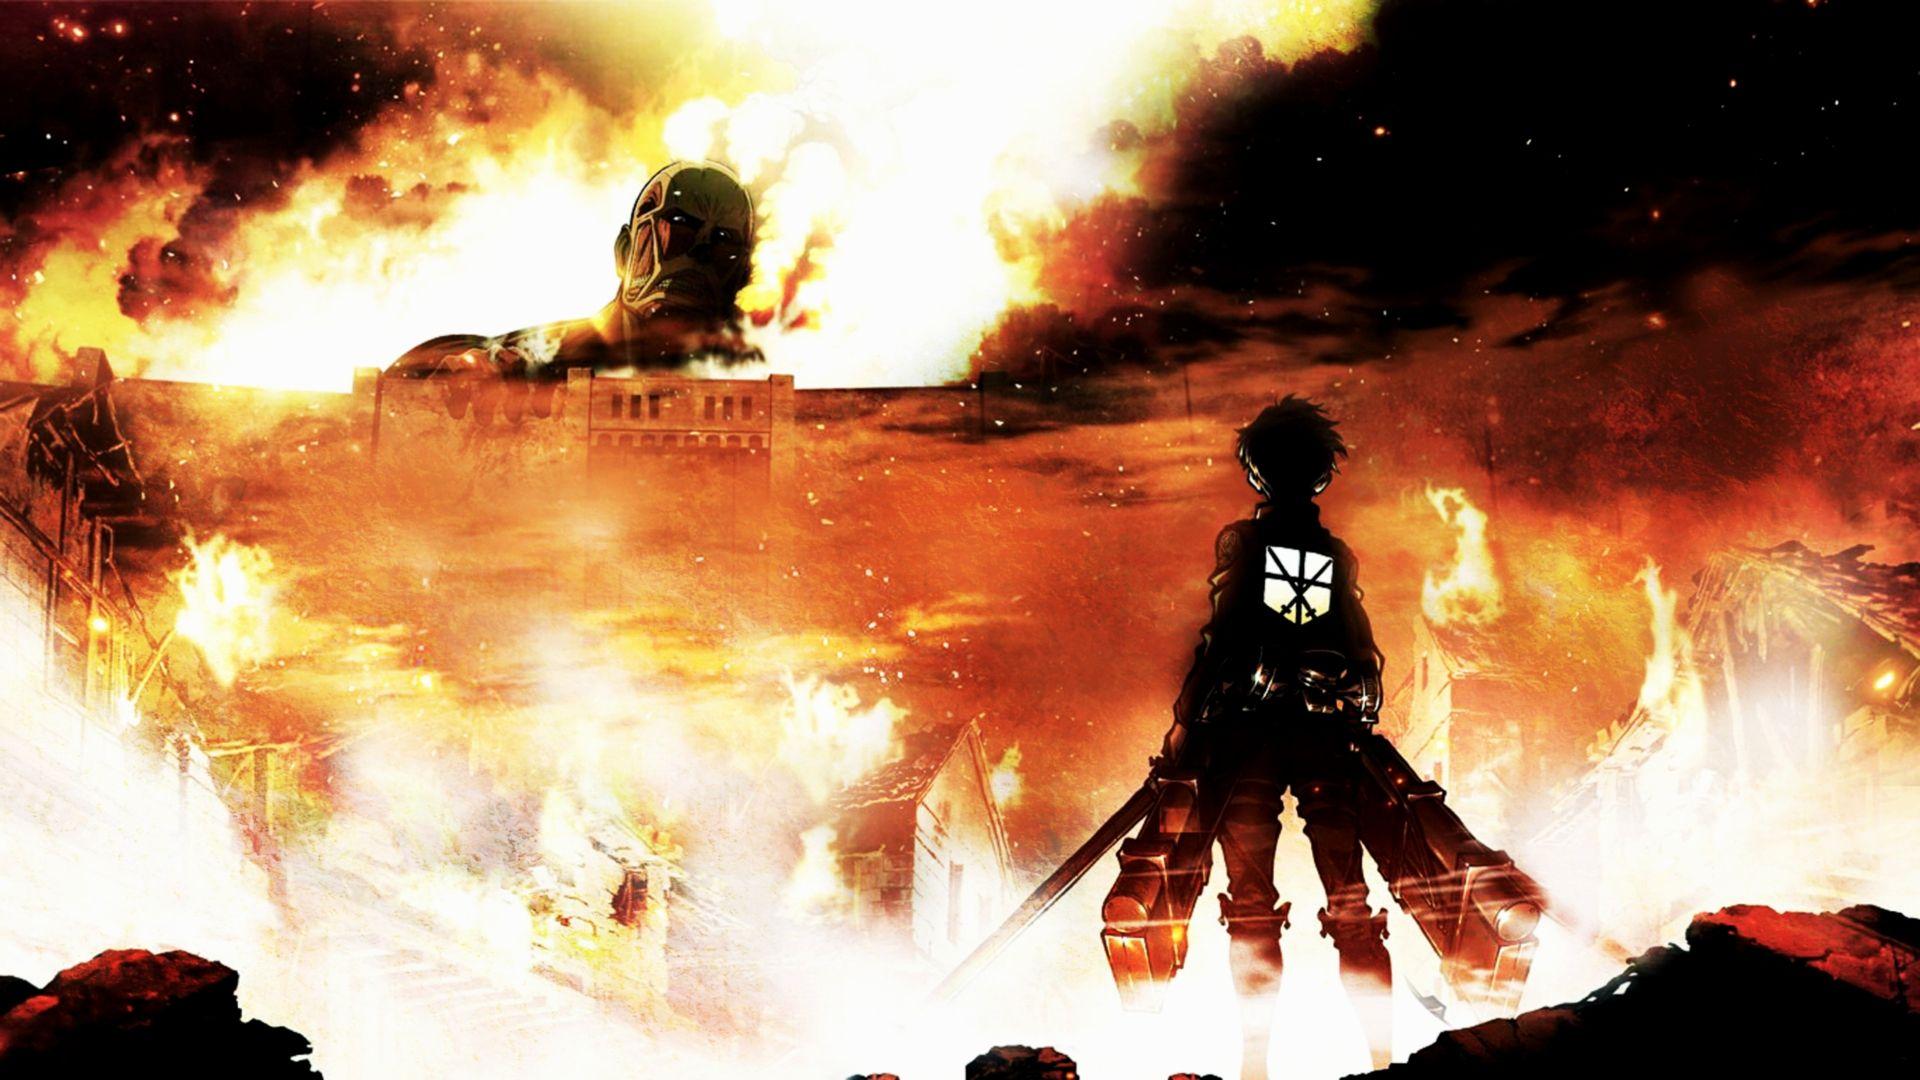 Shingeki no Kyojin (&;Attack on Titan&;): An